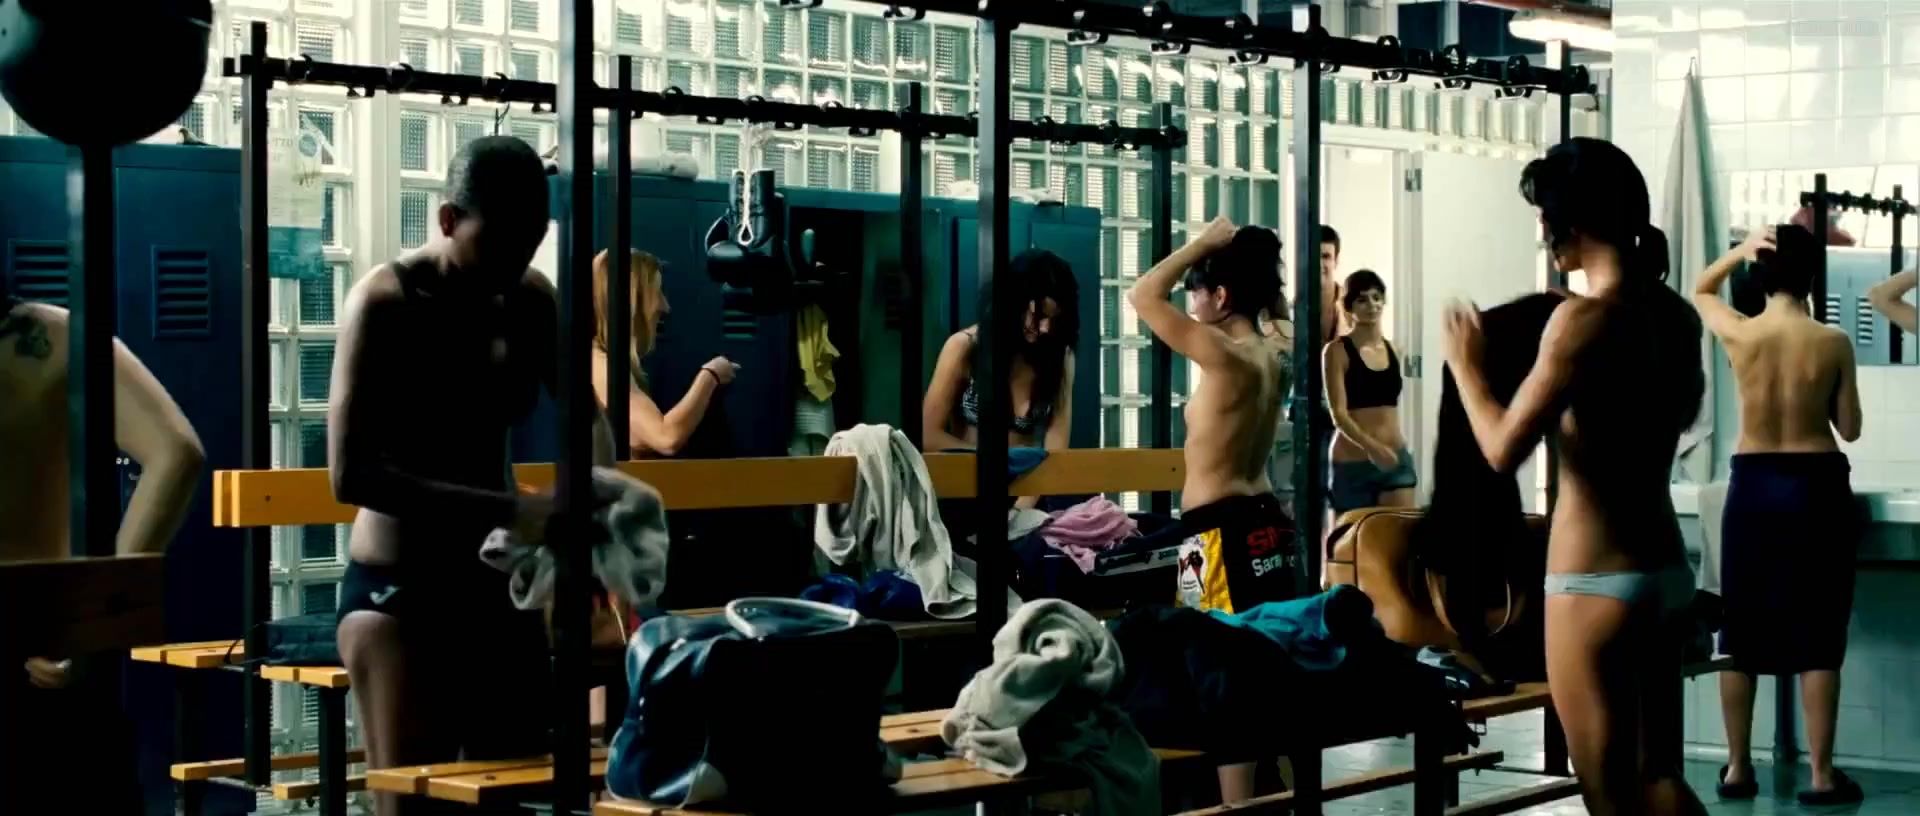 Footjob Clara Lago naked – Tengo ganas de ti (2012) (explicit nudity) Oral Sex